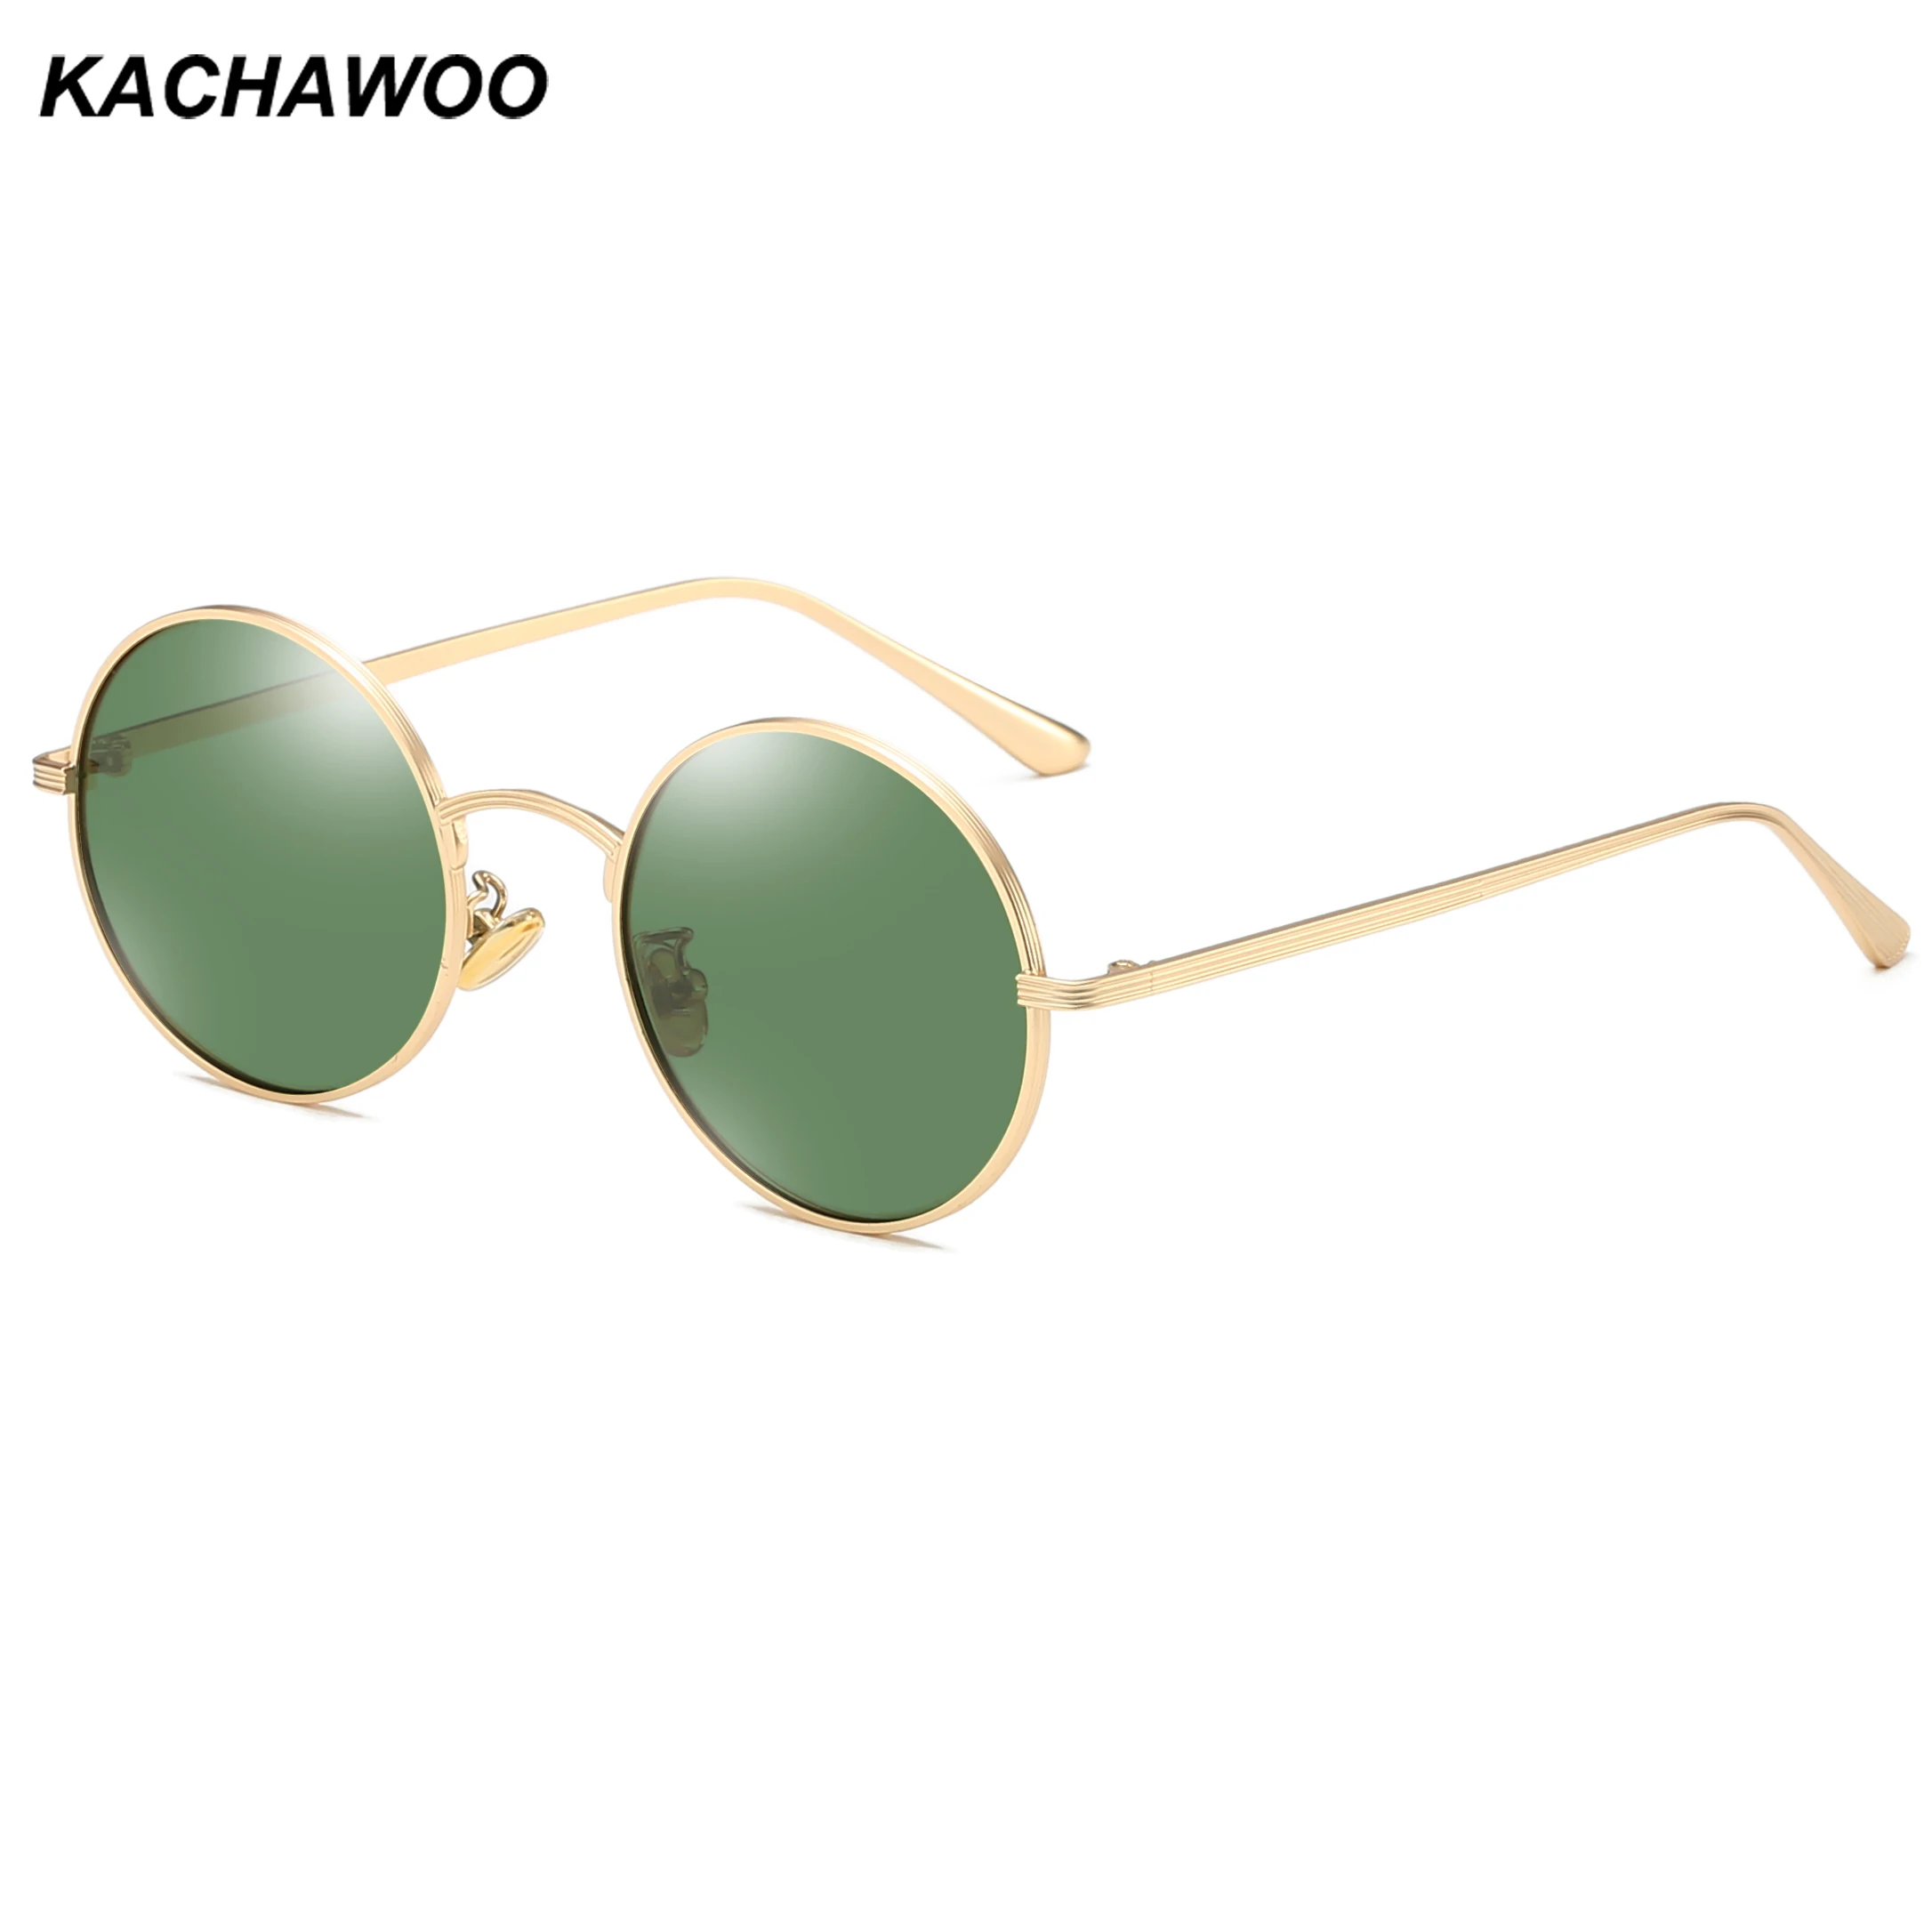 Kachawoo yuvarlak polarize güneş gözlüğü kadınlar için metal altın yeşil retro güneş gözlüğü adam sürüş tam jant tarzı unisex gözlük Görüntü 0 